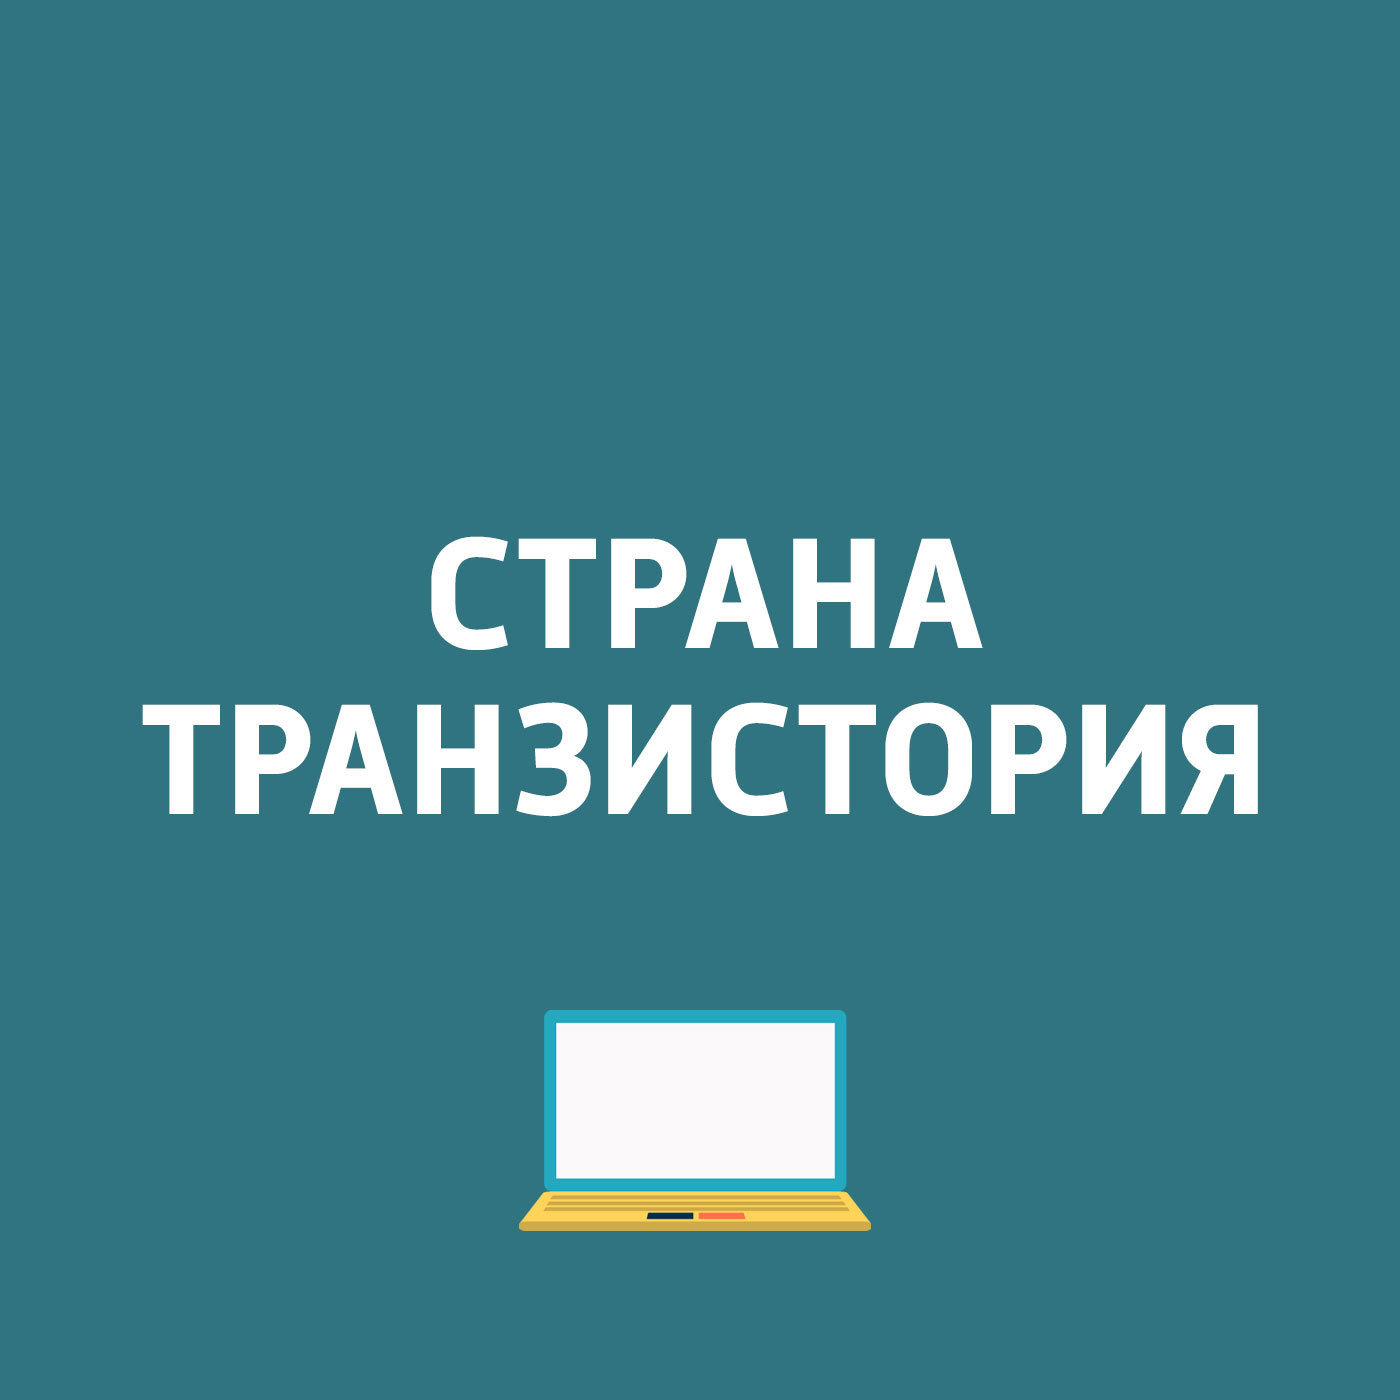 Блокировка контента, запросы в Яндексе, новый iPhone